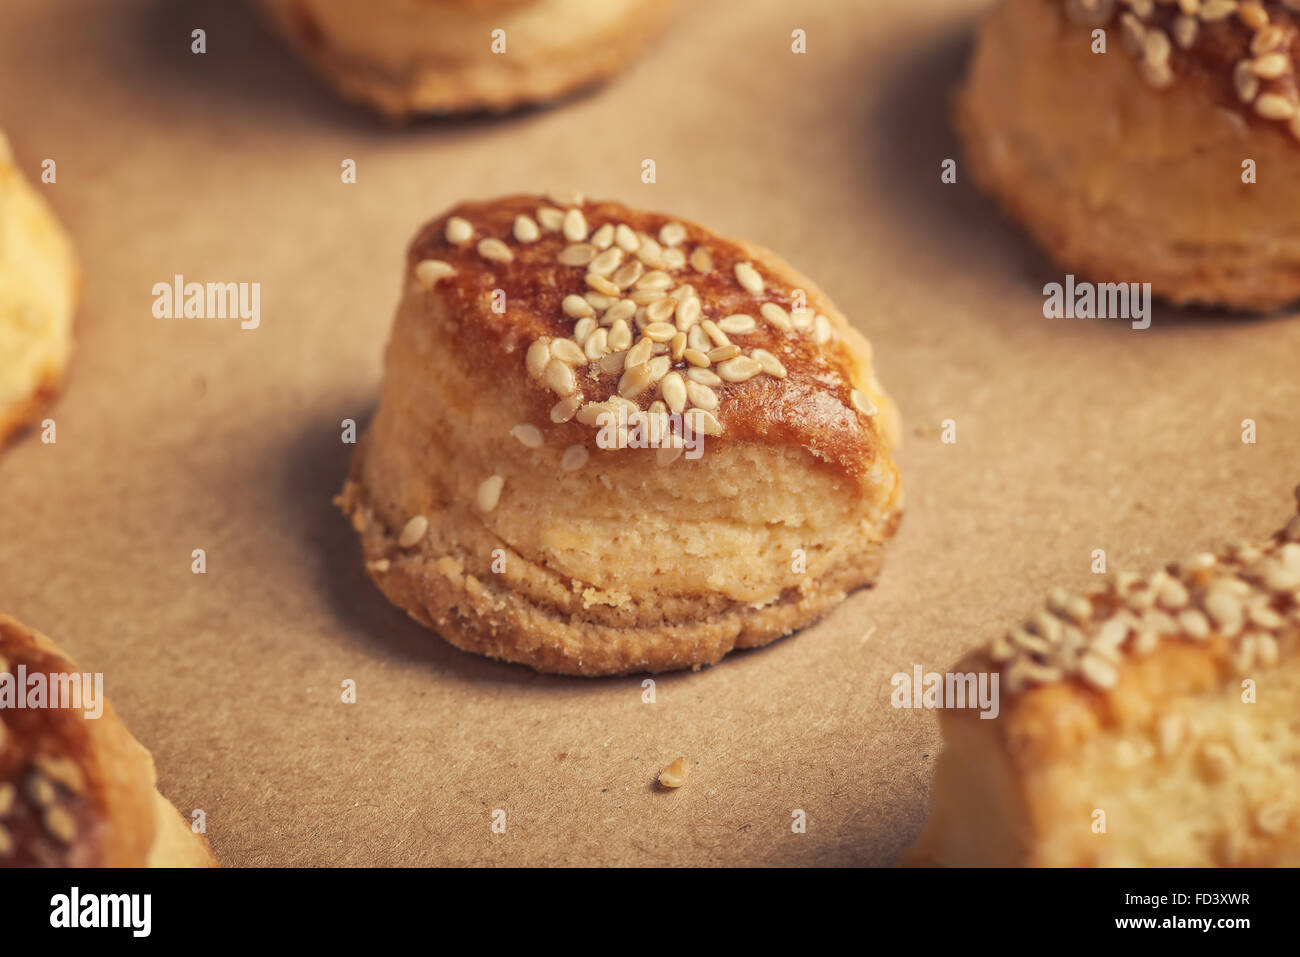 Des scones salés au fromage et au sésame, Tasty Baking produit alimentaire sur papier kraft, macro close up Banque D'Images